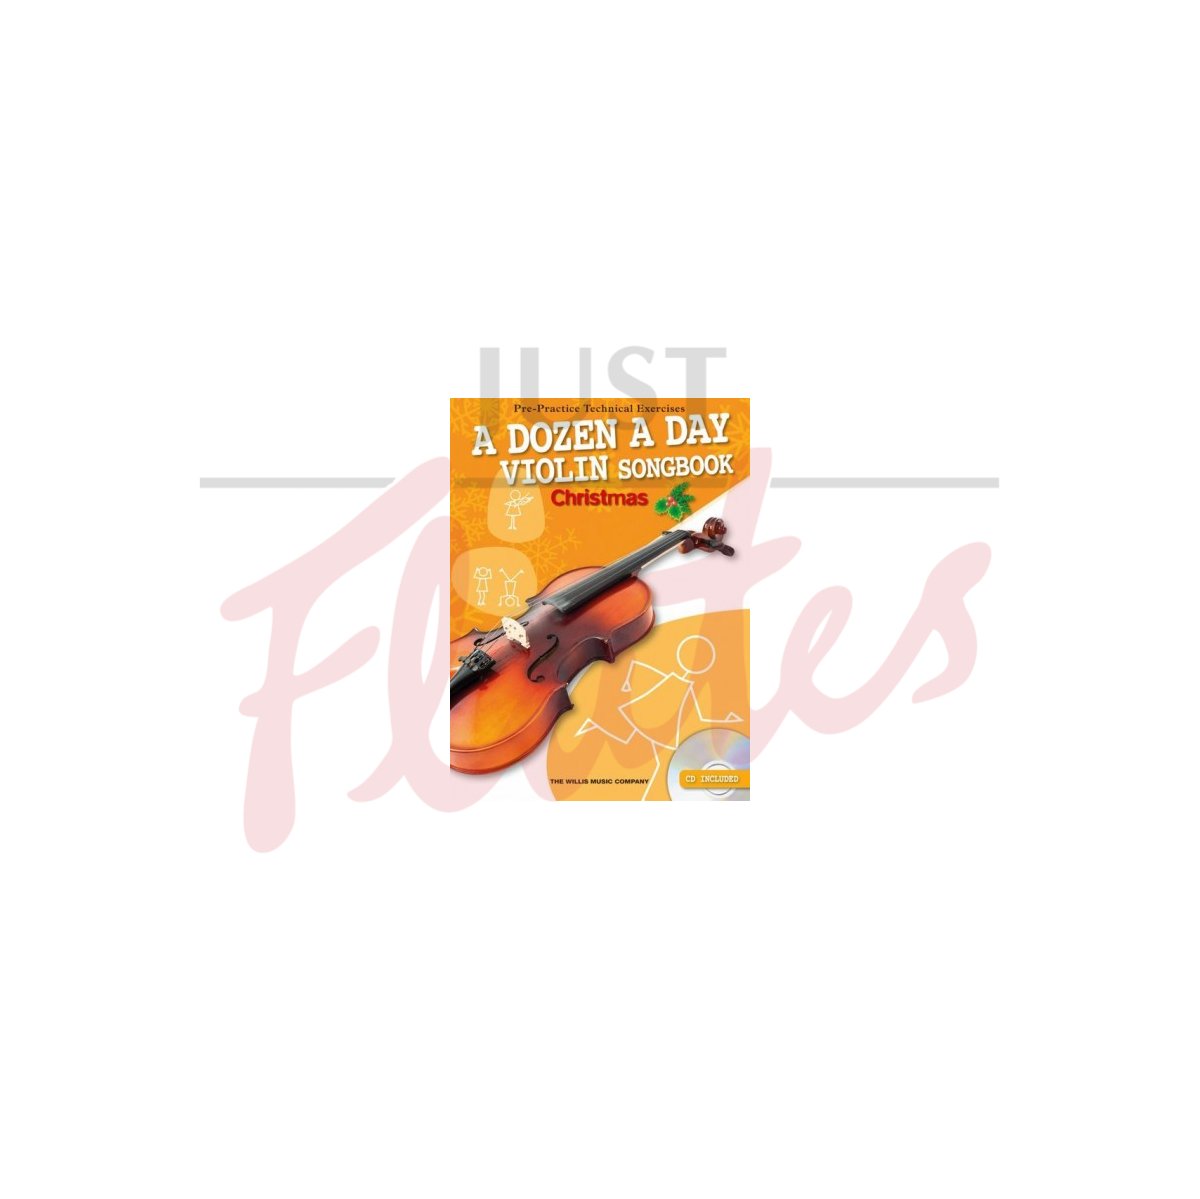 A Dozen a Day Violin Songbook: Christmas